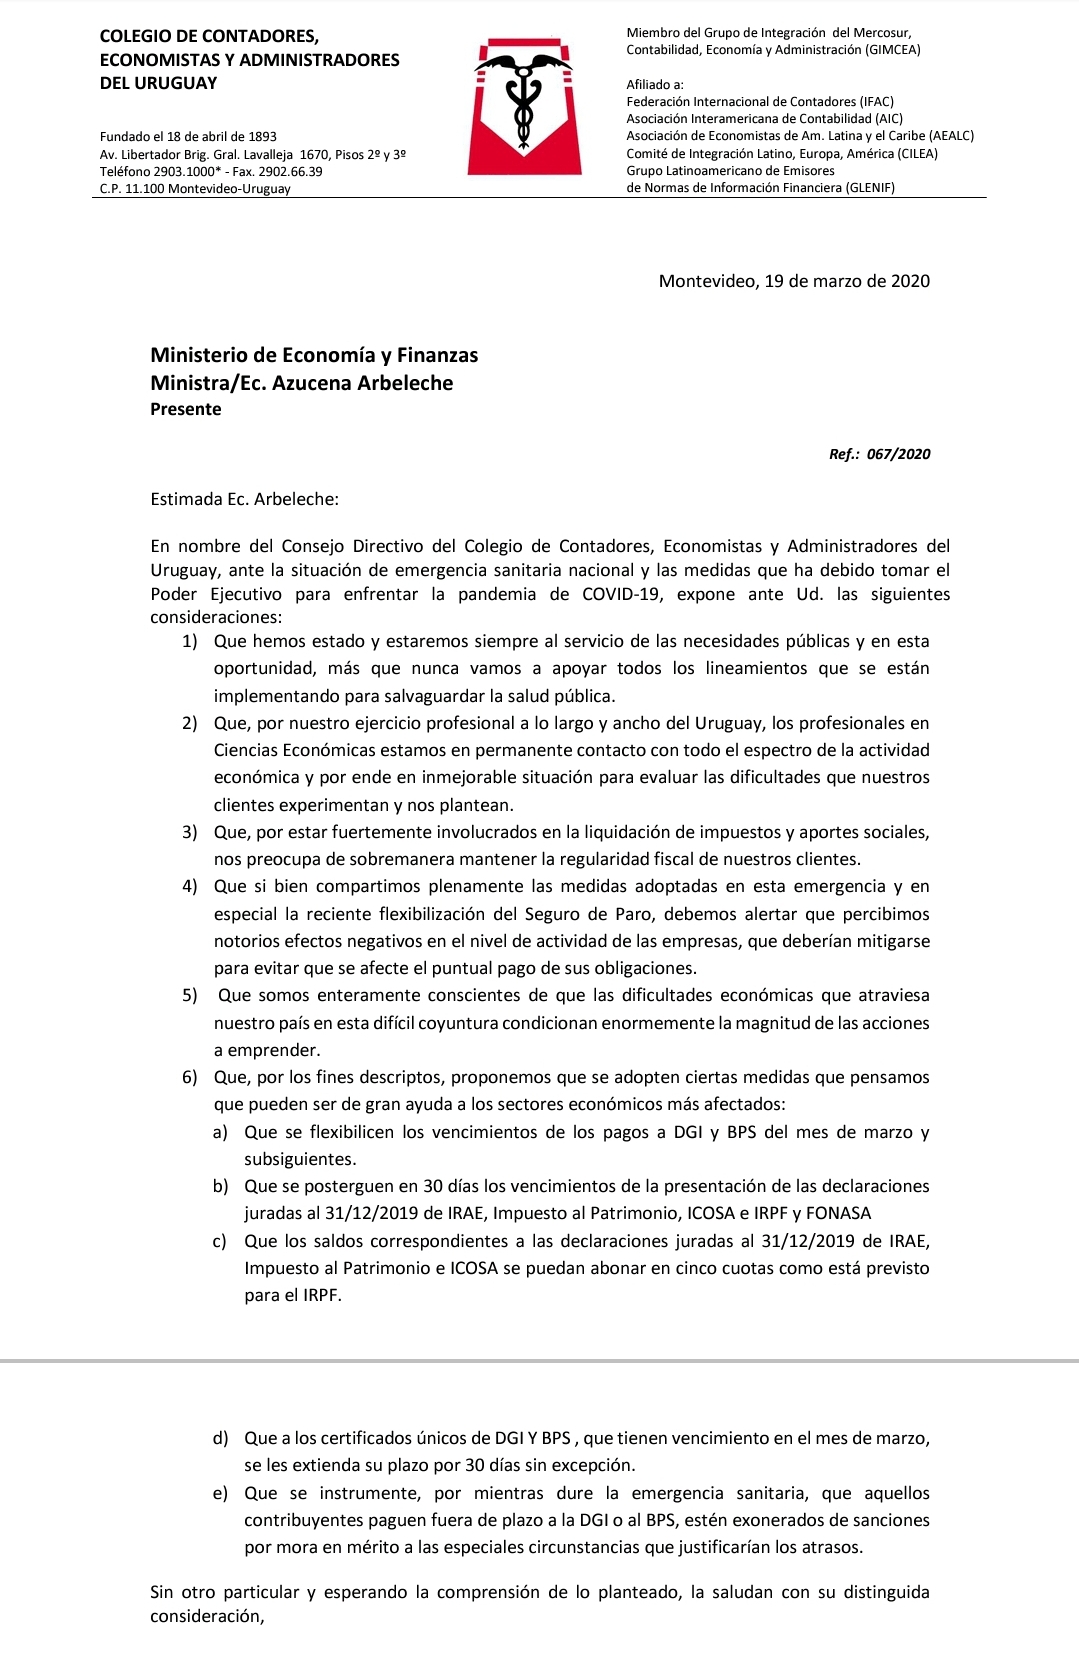 Colegio de Contadores, Economistas y Administradores del Uruguay envió carta a la Ministra Arbeleche